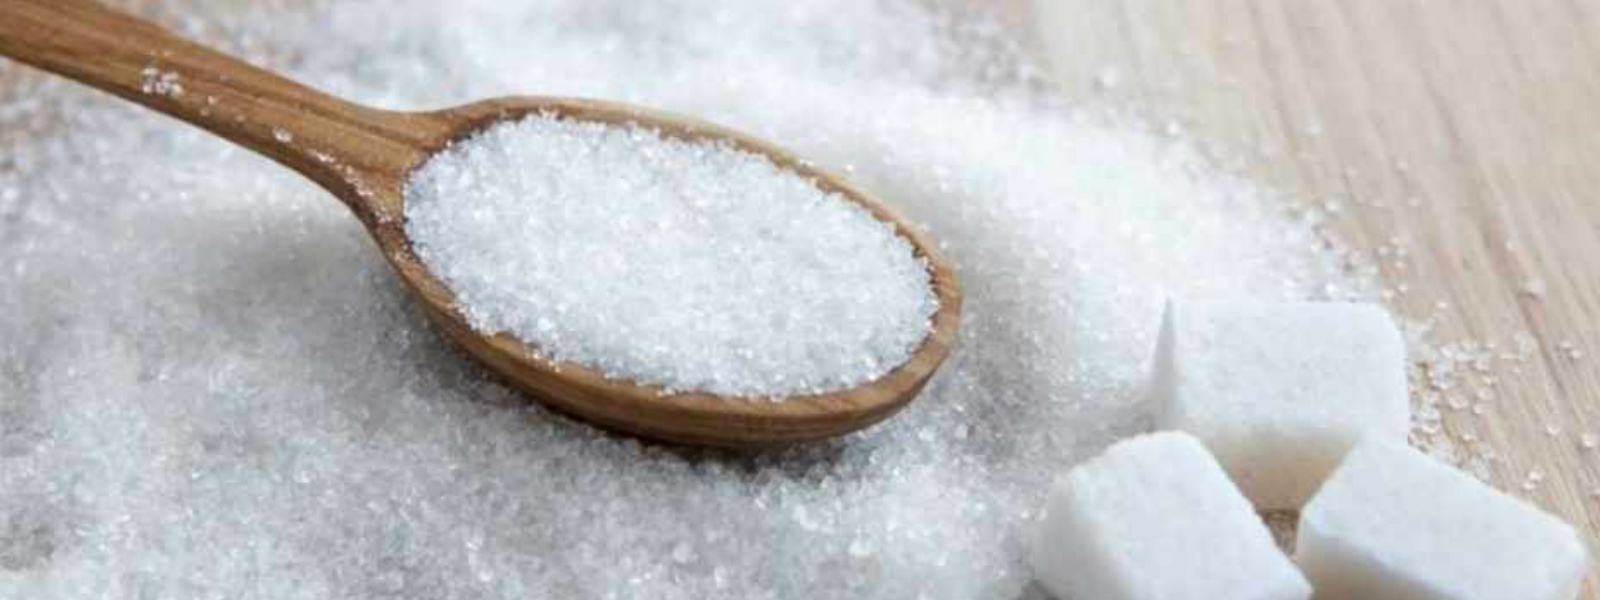 Maximum Retail Price for White Sugar